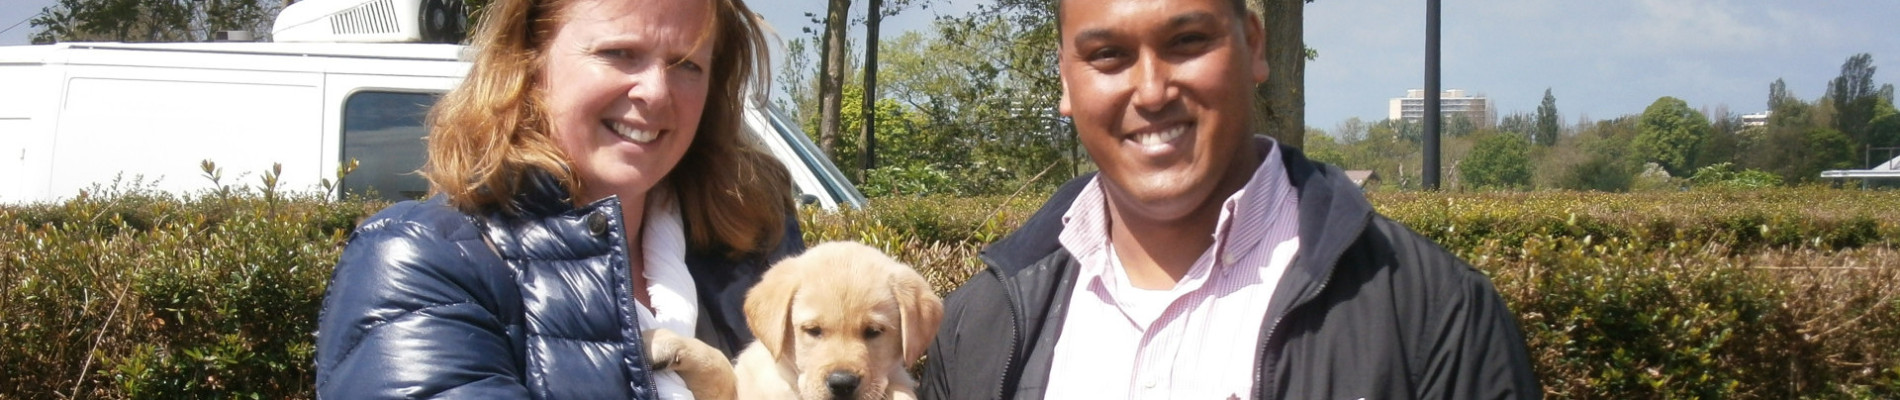 Familie Hooper, 2 volwassenen en 2 kleine kinderen, staat buiten met een blonde pup in hun armen